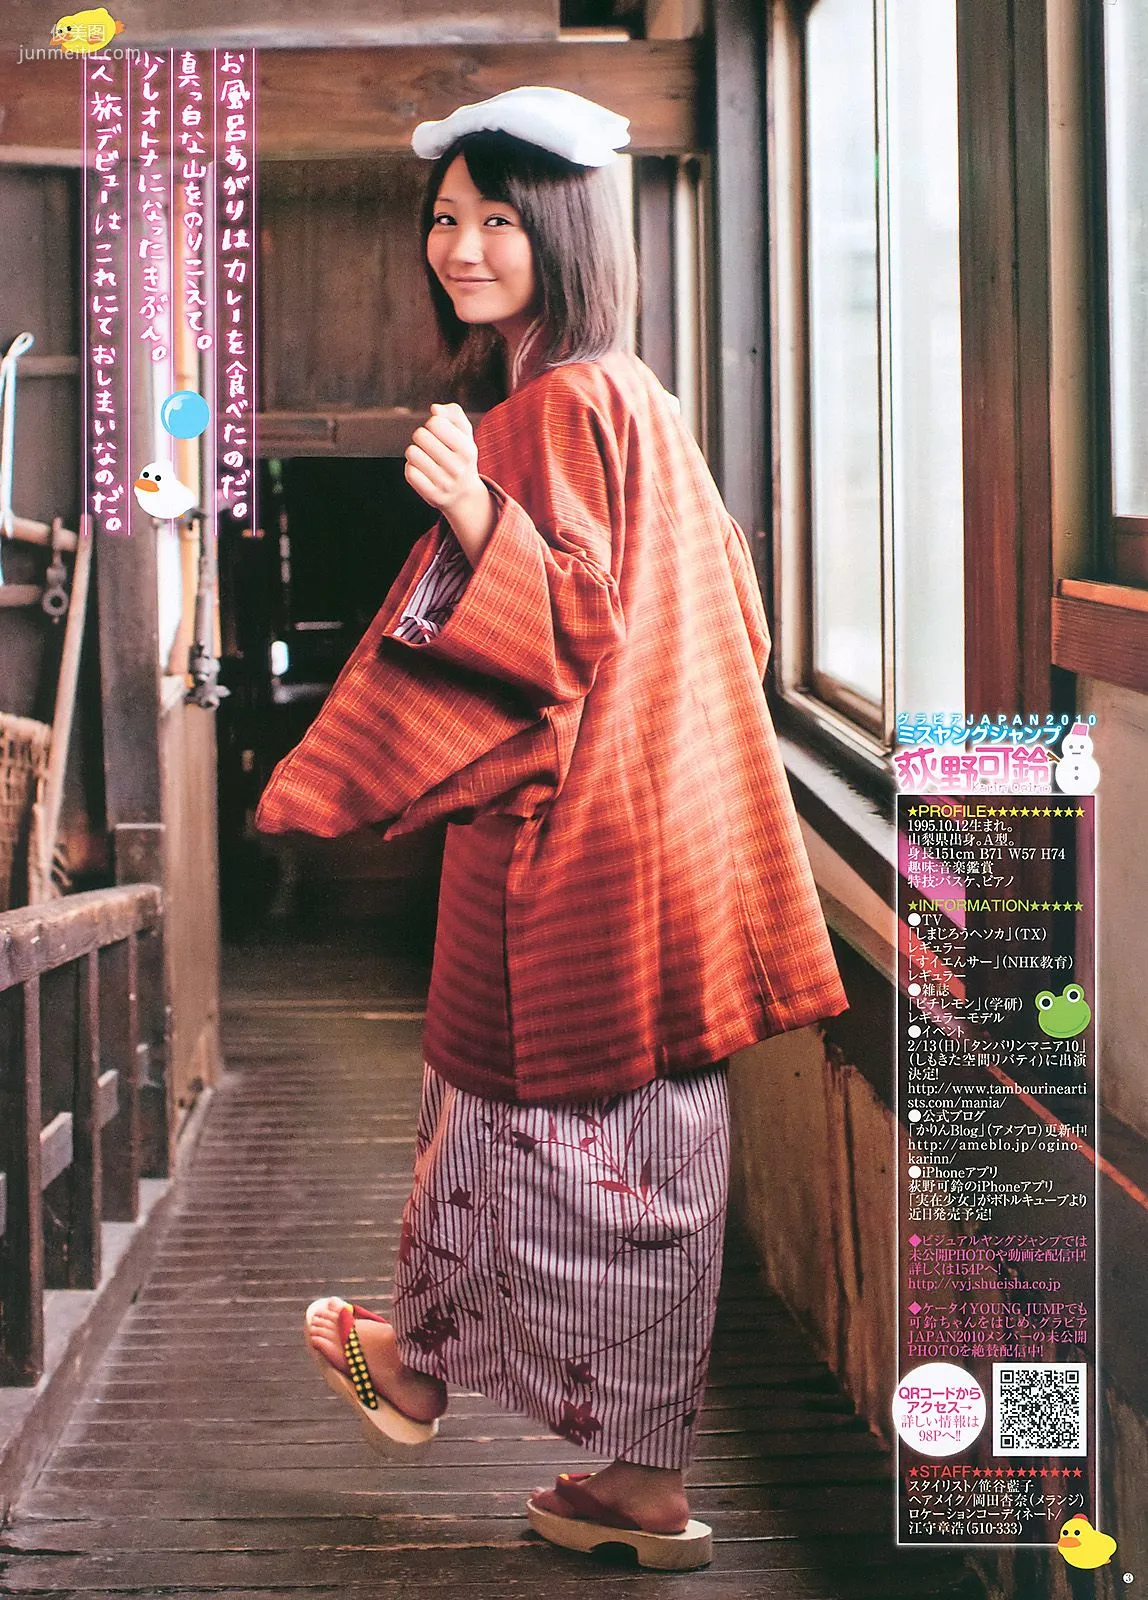 渡り廊下走り隊7 杉ありさ 荻野可鈴 [Weekly Young Jump] 2011年No.10 写真杂志16